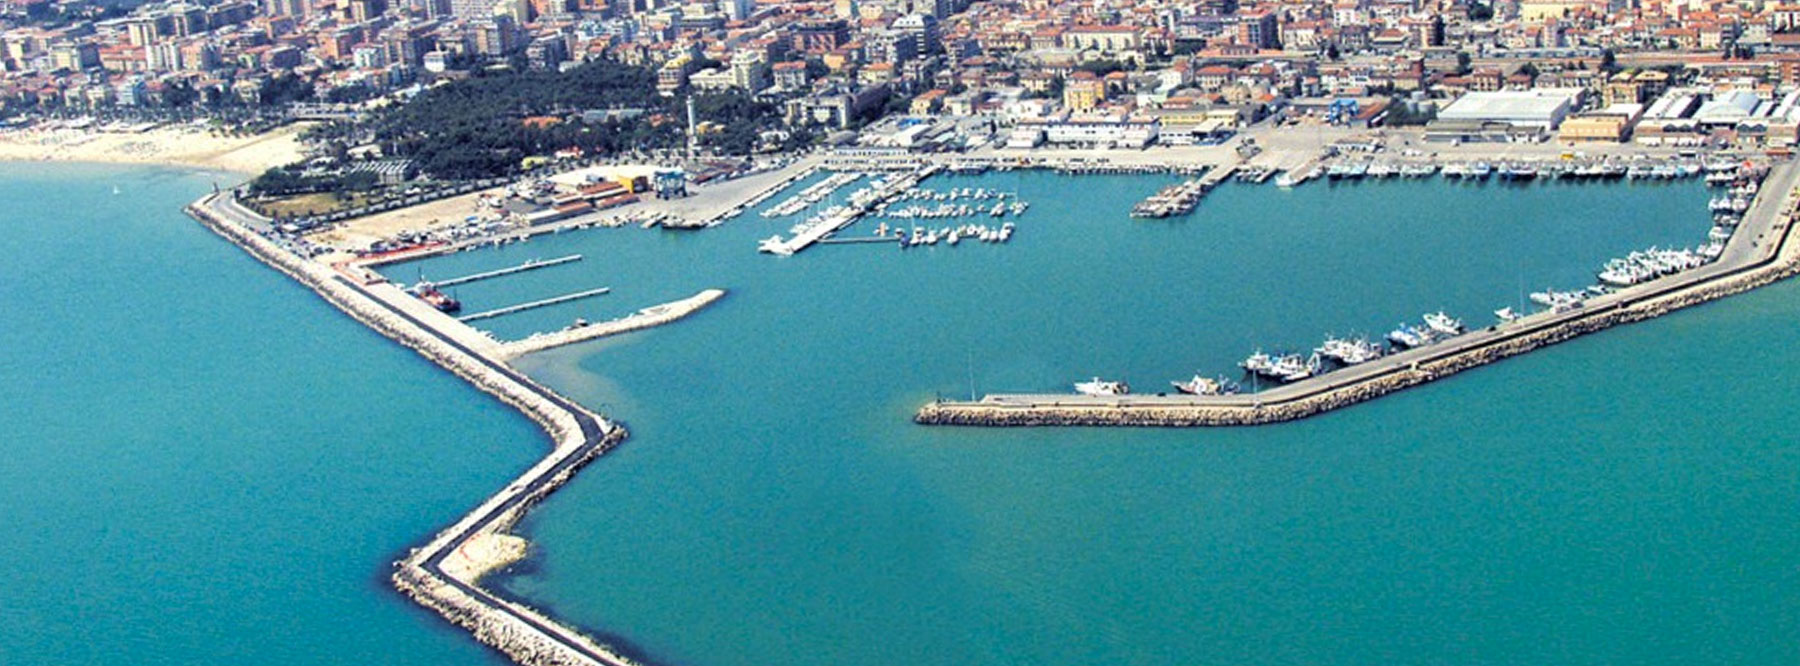 Port of San Benedetto del Tronto